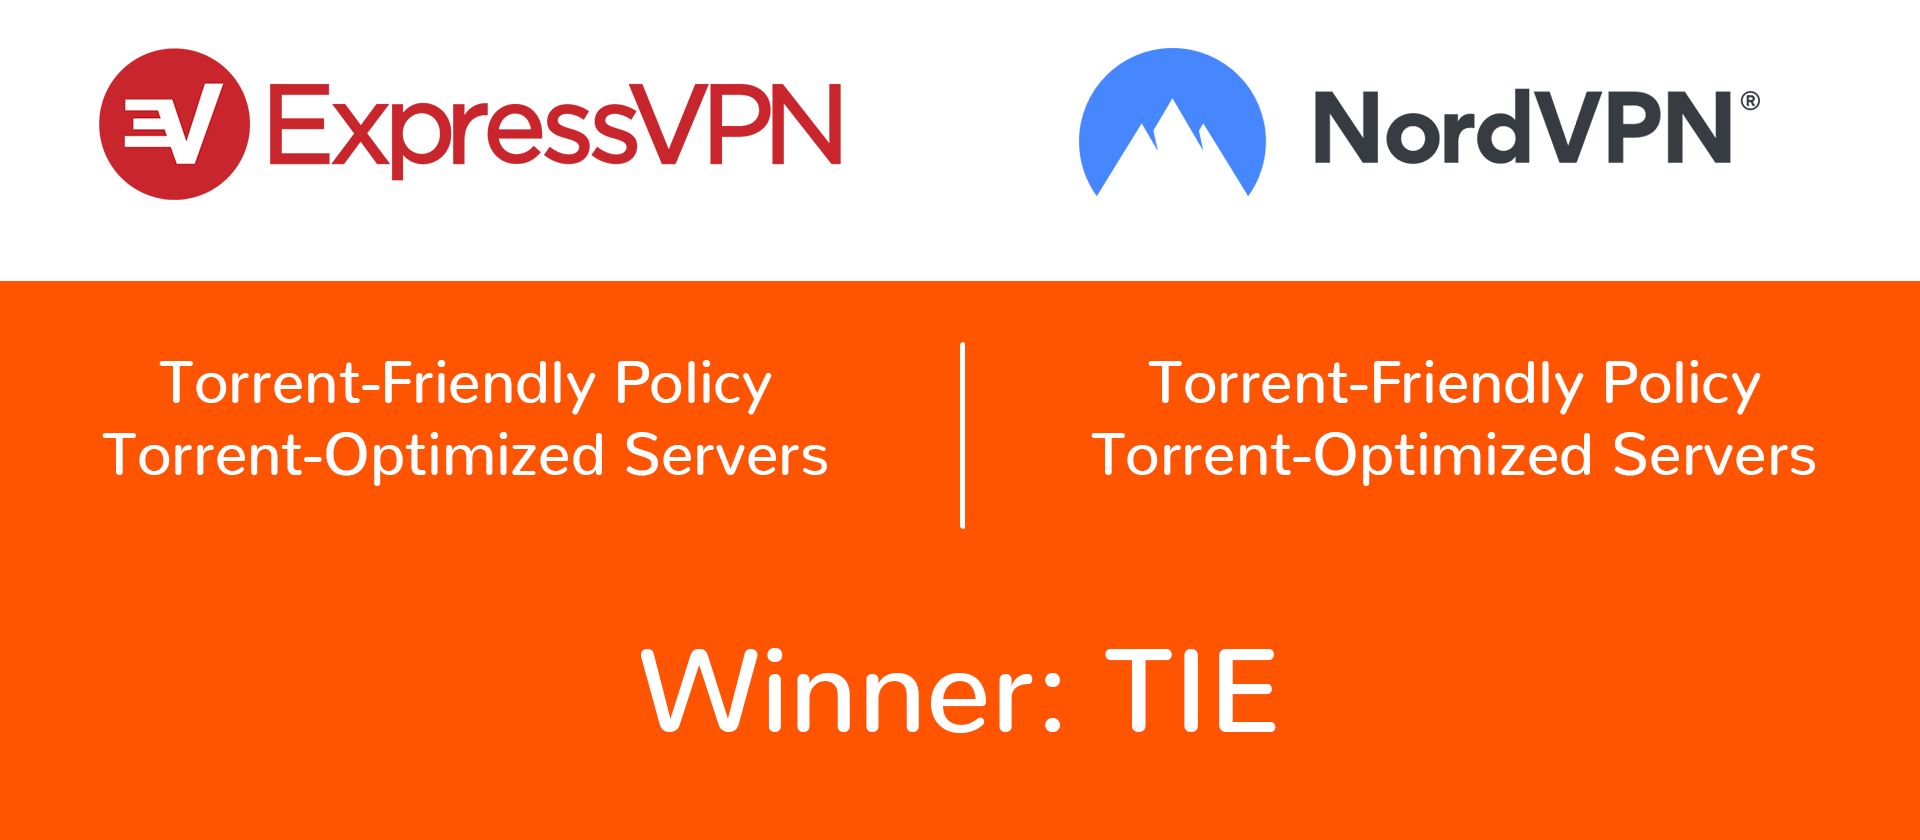 nordvpn and expressvpn torrent policies